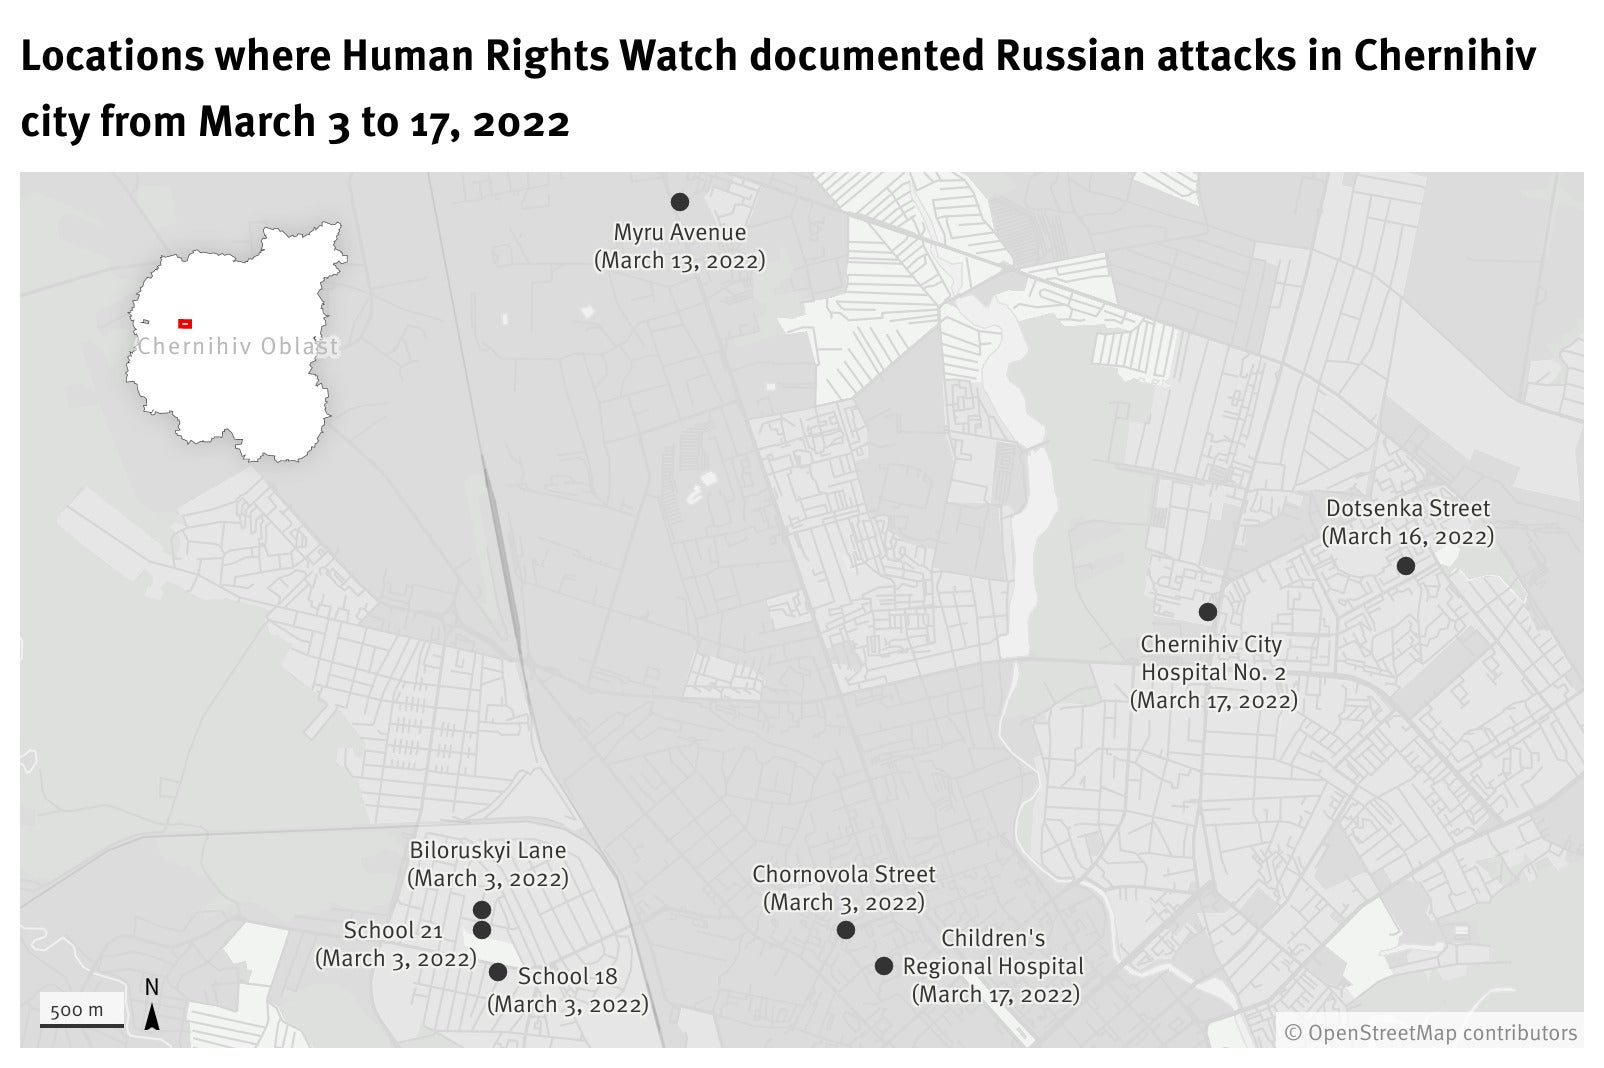 Emplacements de huit attaques menées par les forces russes à Tchernihiv, dans le nord de l’Ukraine, entre le 3 mars et 17 mars, et documentées par Human Rights Watch.